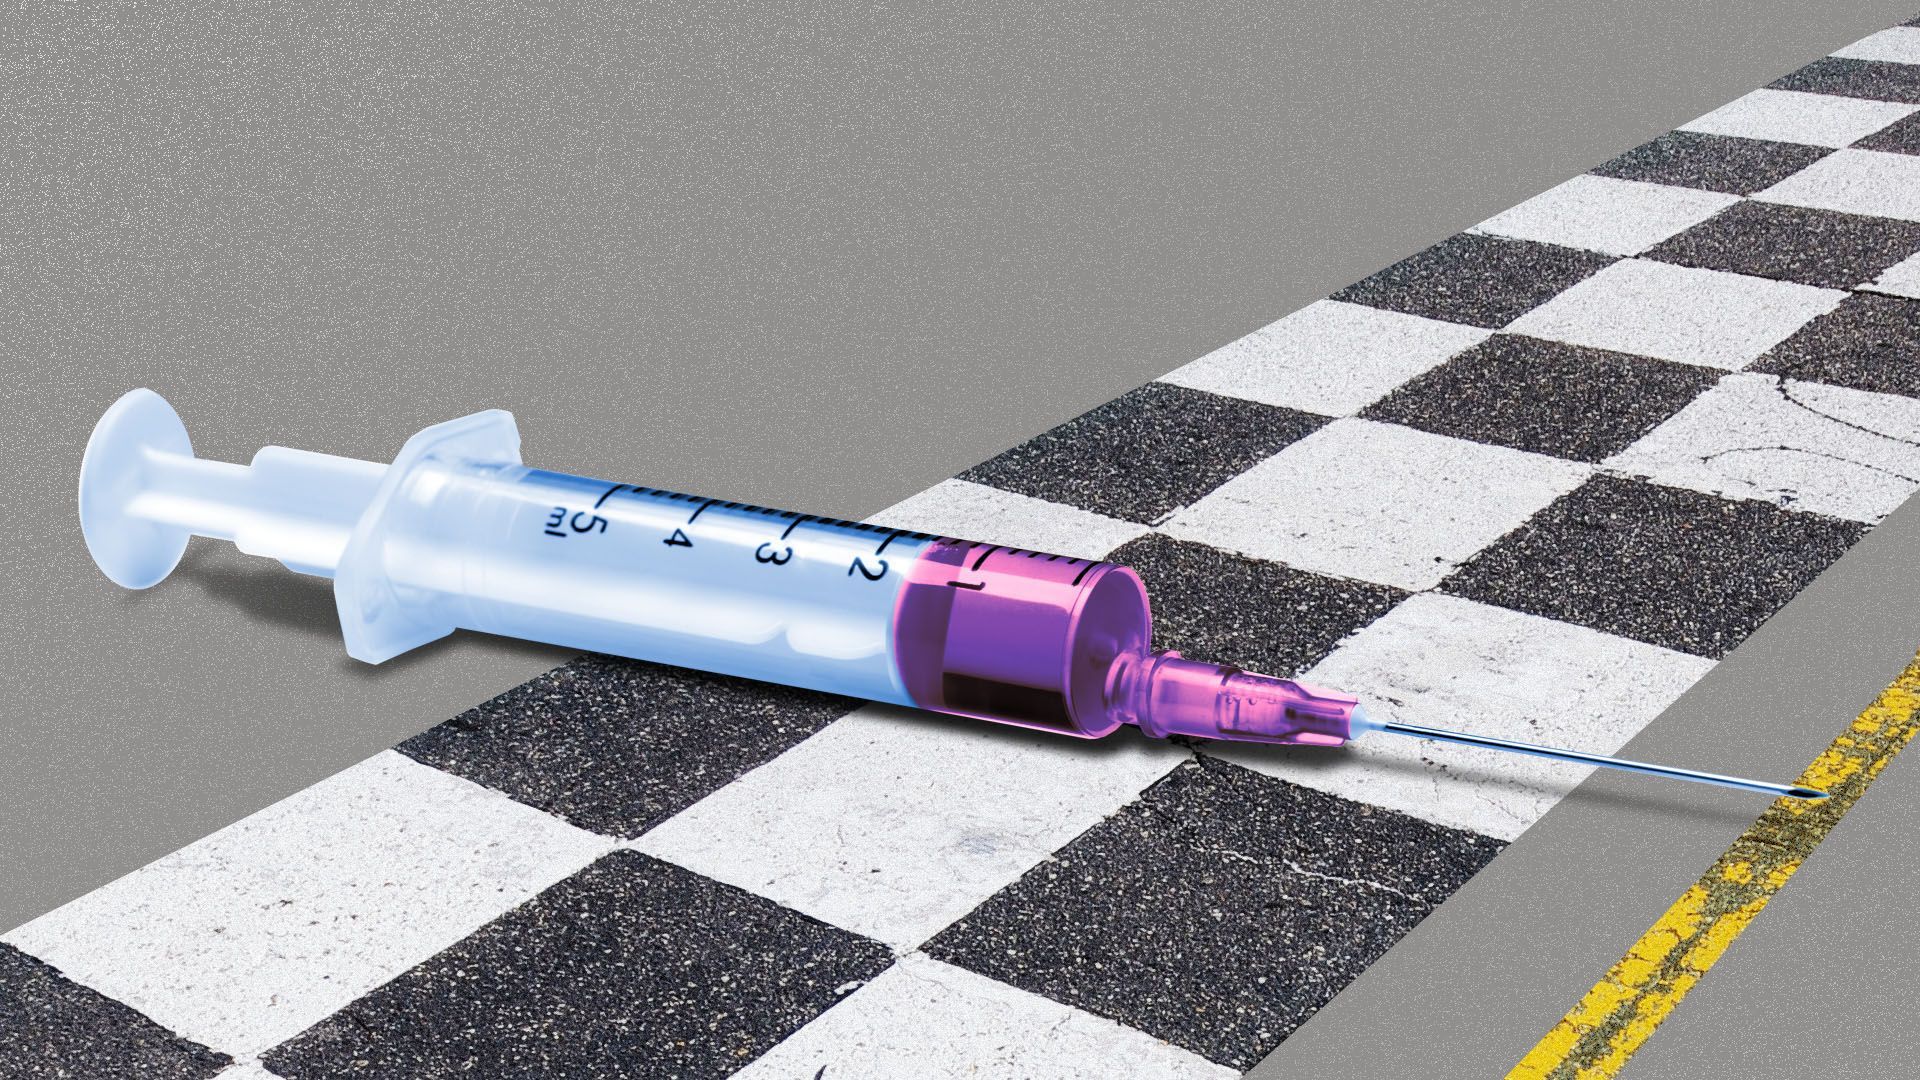 Illustration of a syringe at a racing start line